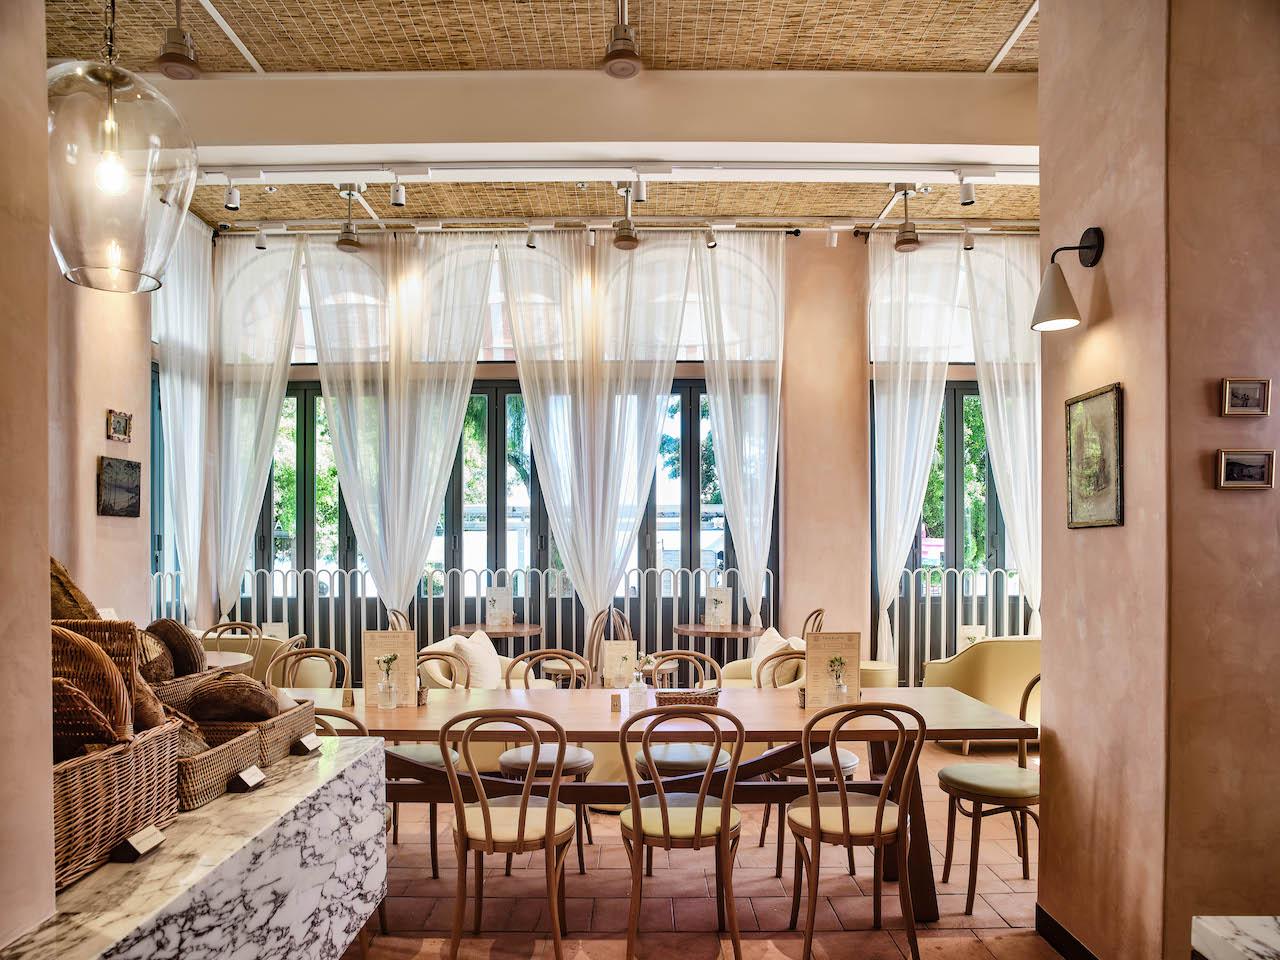 意式烘焙店Pane e Latte進駐赤柱，粉紅建築100%還原意大利海岸